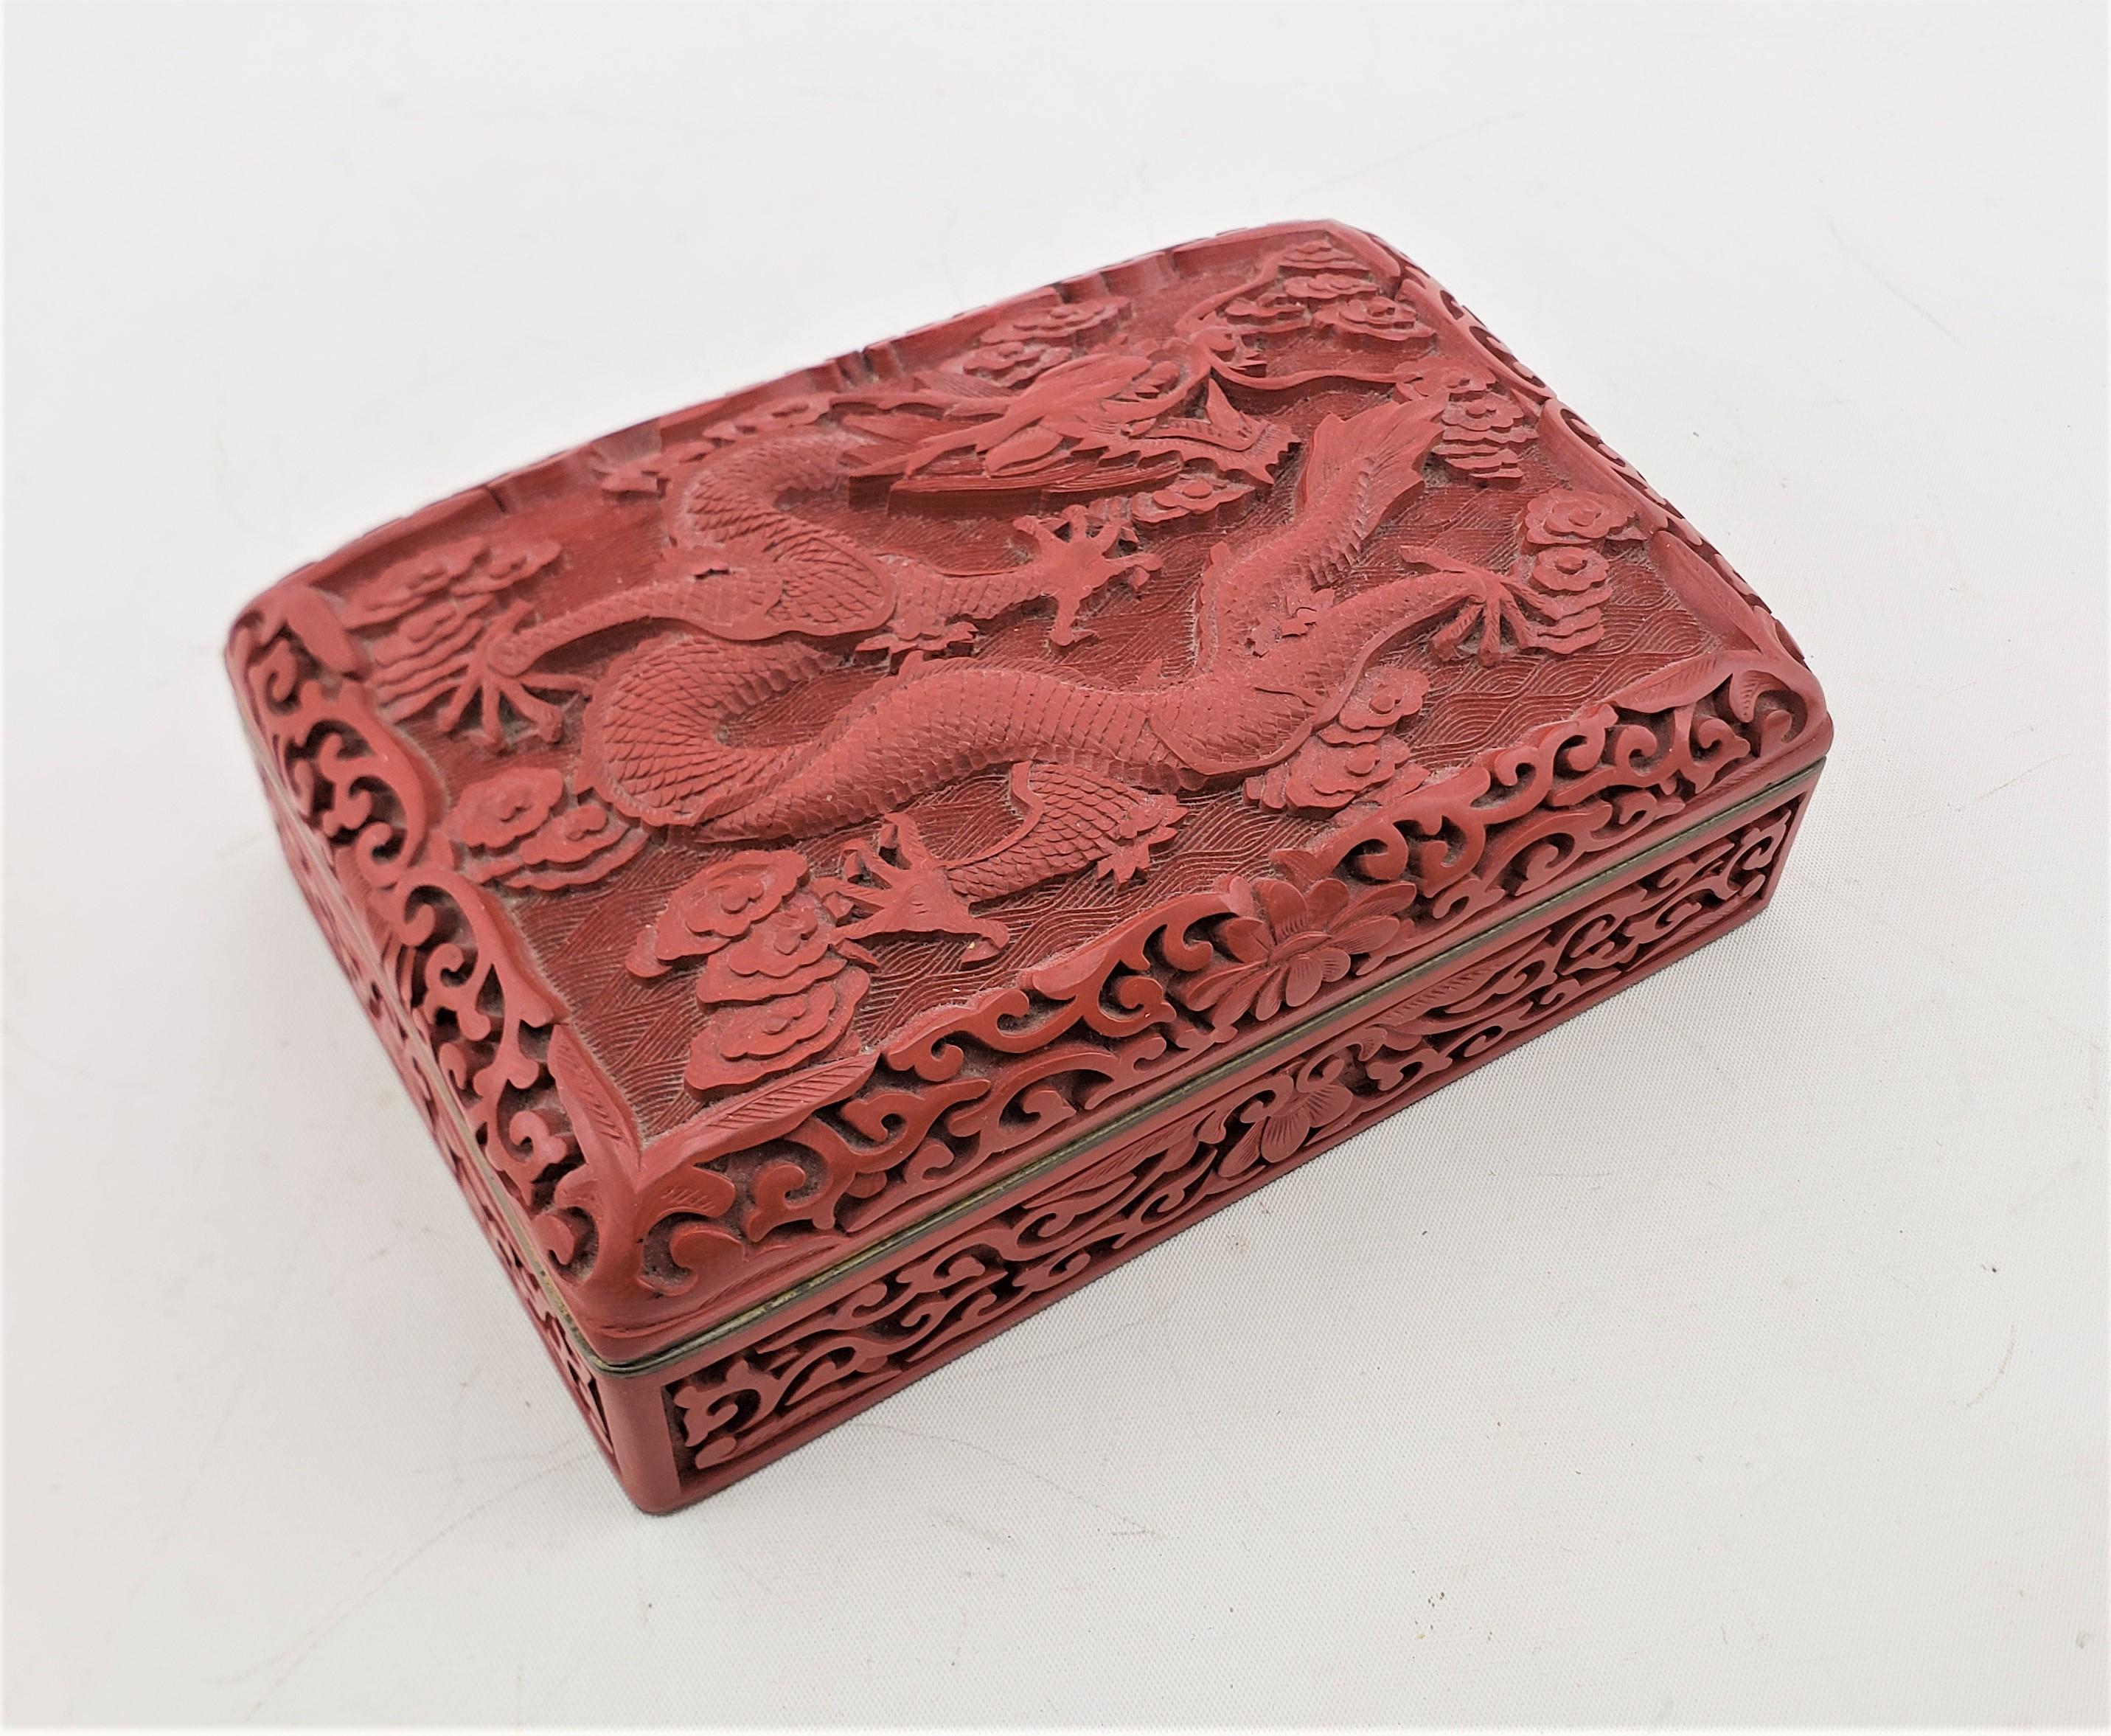 Cette boîte décorative ancienne n'est pas signée, mais on suppose qu'elle provient de Chine. Elle date d'environ 1920 et est réalisée dans un style d'exportation chinois d'époque. La boîte est composée de laiton avec un intérieur émaillé d'un bleu